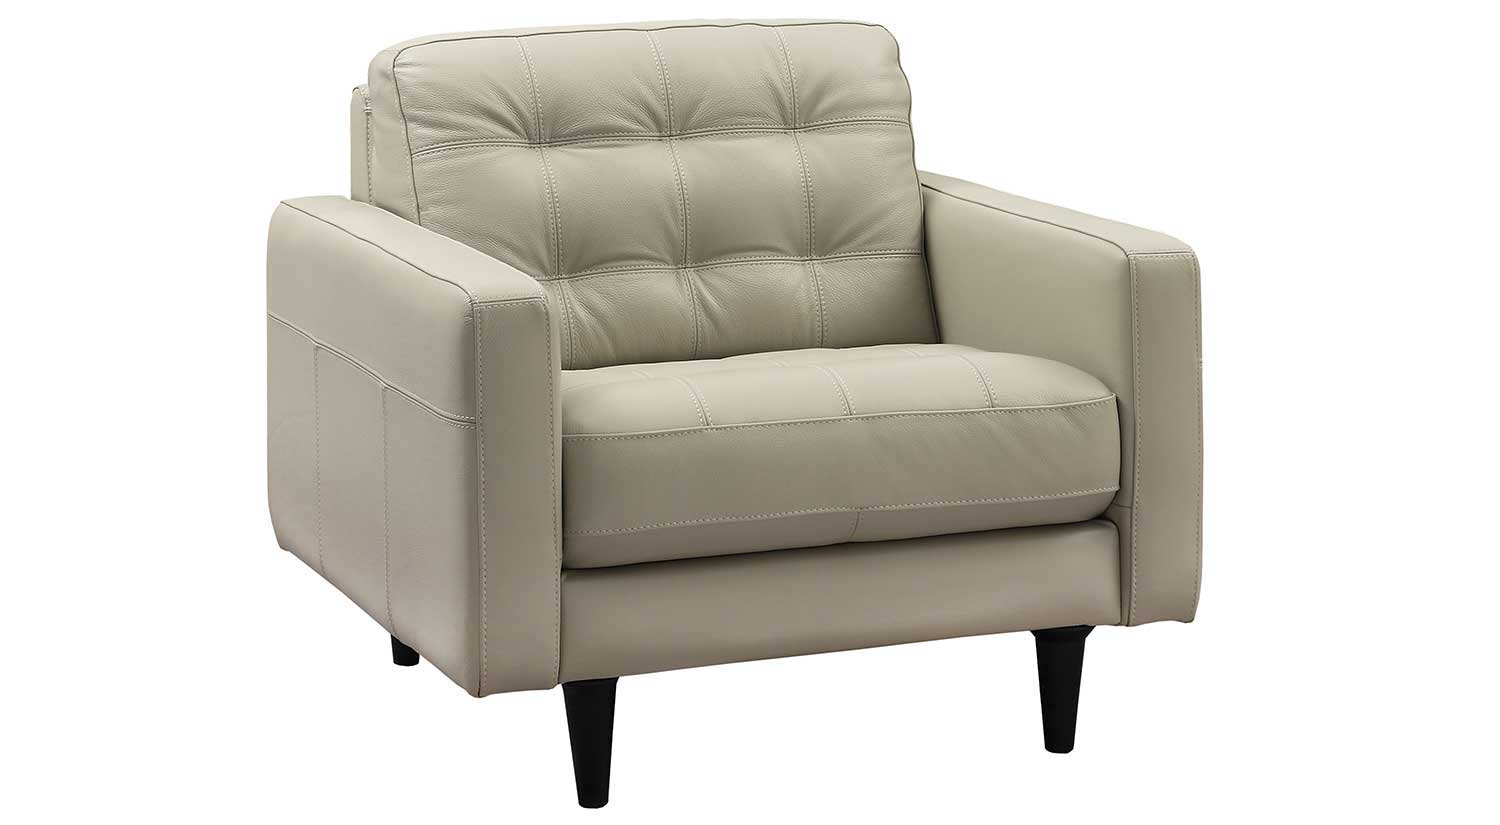 Circle Furniture Fairfield Chair, Fairfield Leather Chair